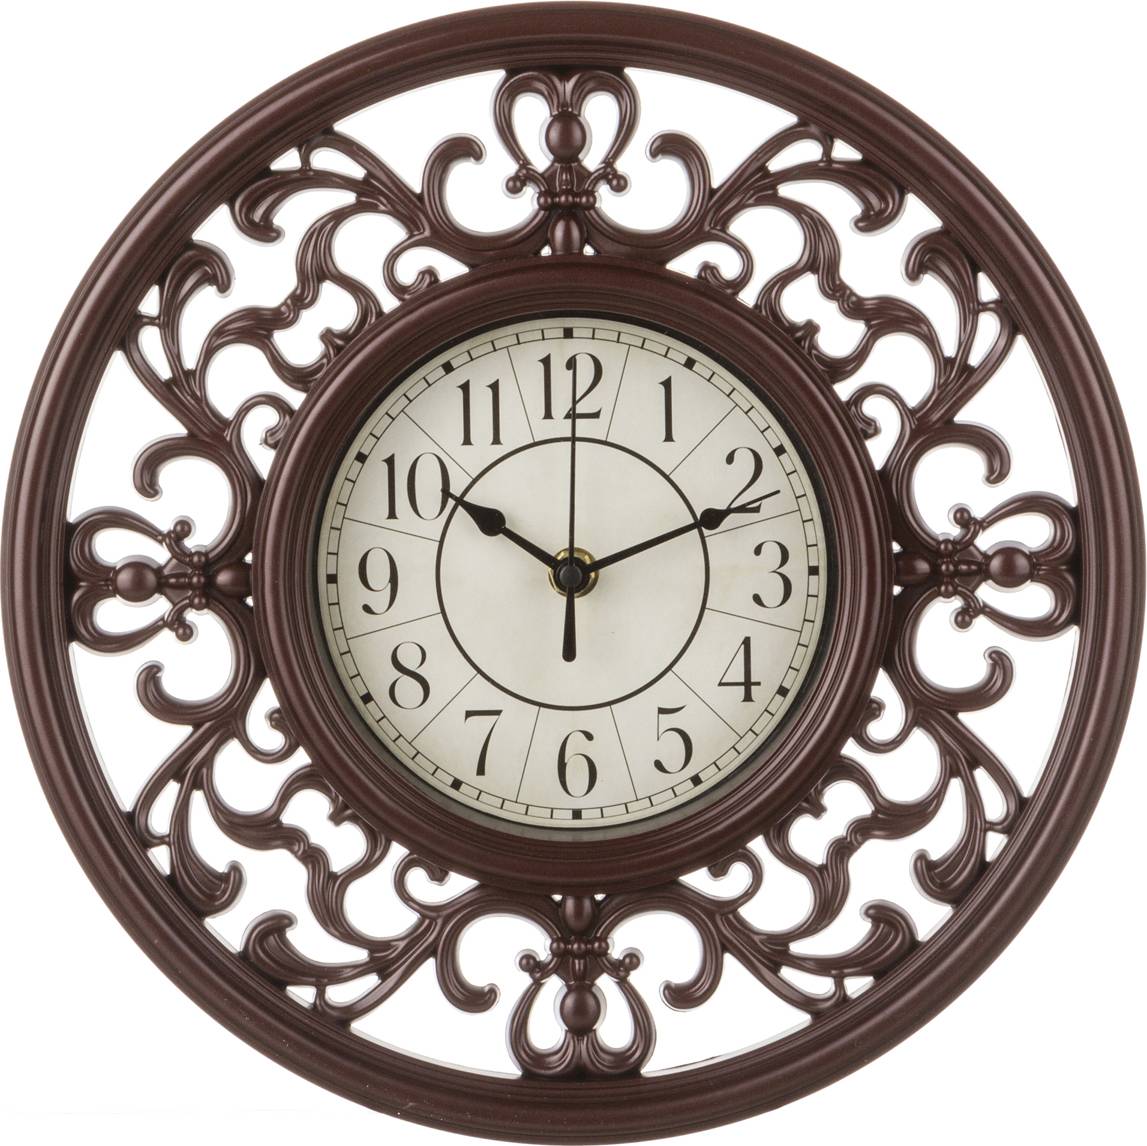 Модели часов настенных. Часы кварцевые настенные 30 см. Lefard. Часы кварцевые настенные Lefard, 40x9x63 см (арт 204-247). Часы круглые. Часы настенные классические для гостиной.